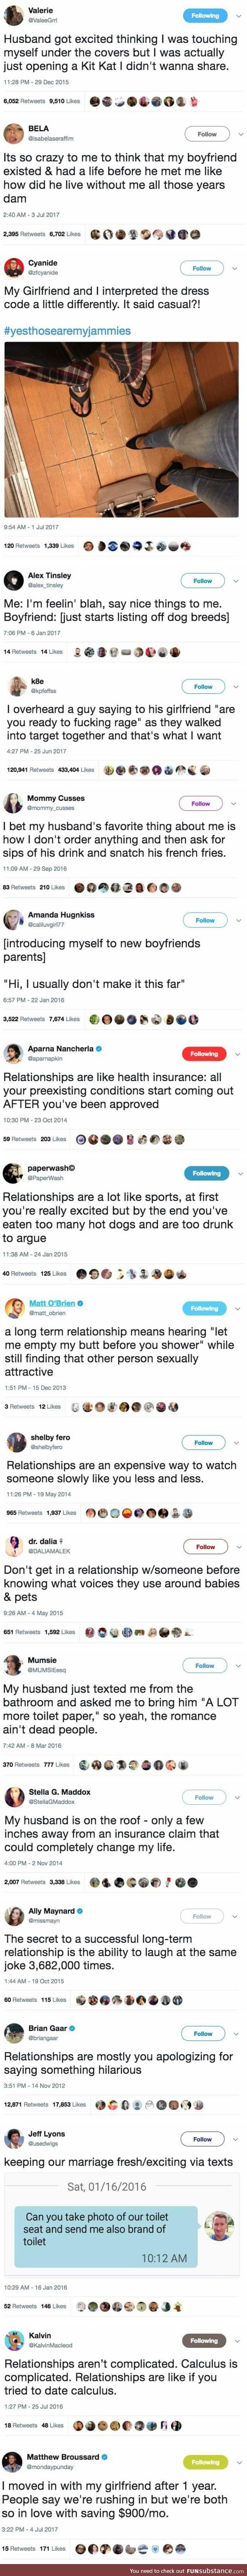 Relationship tweets